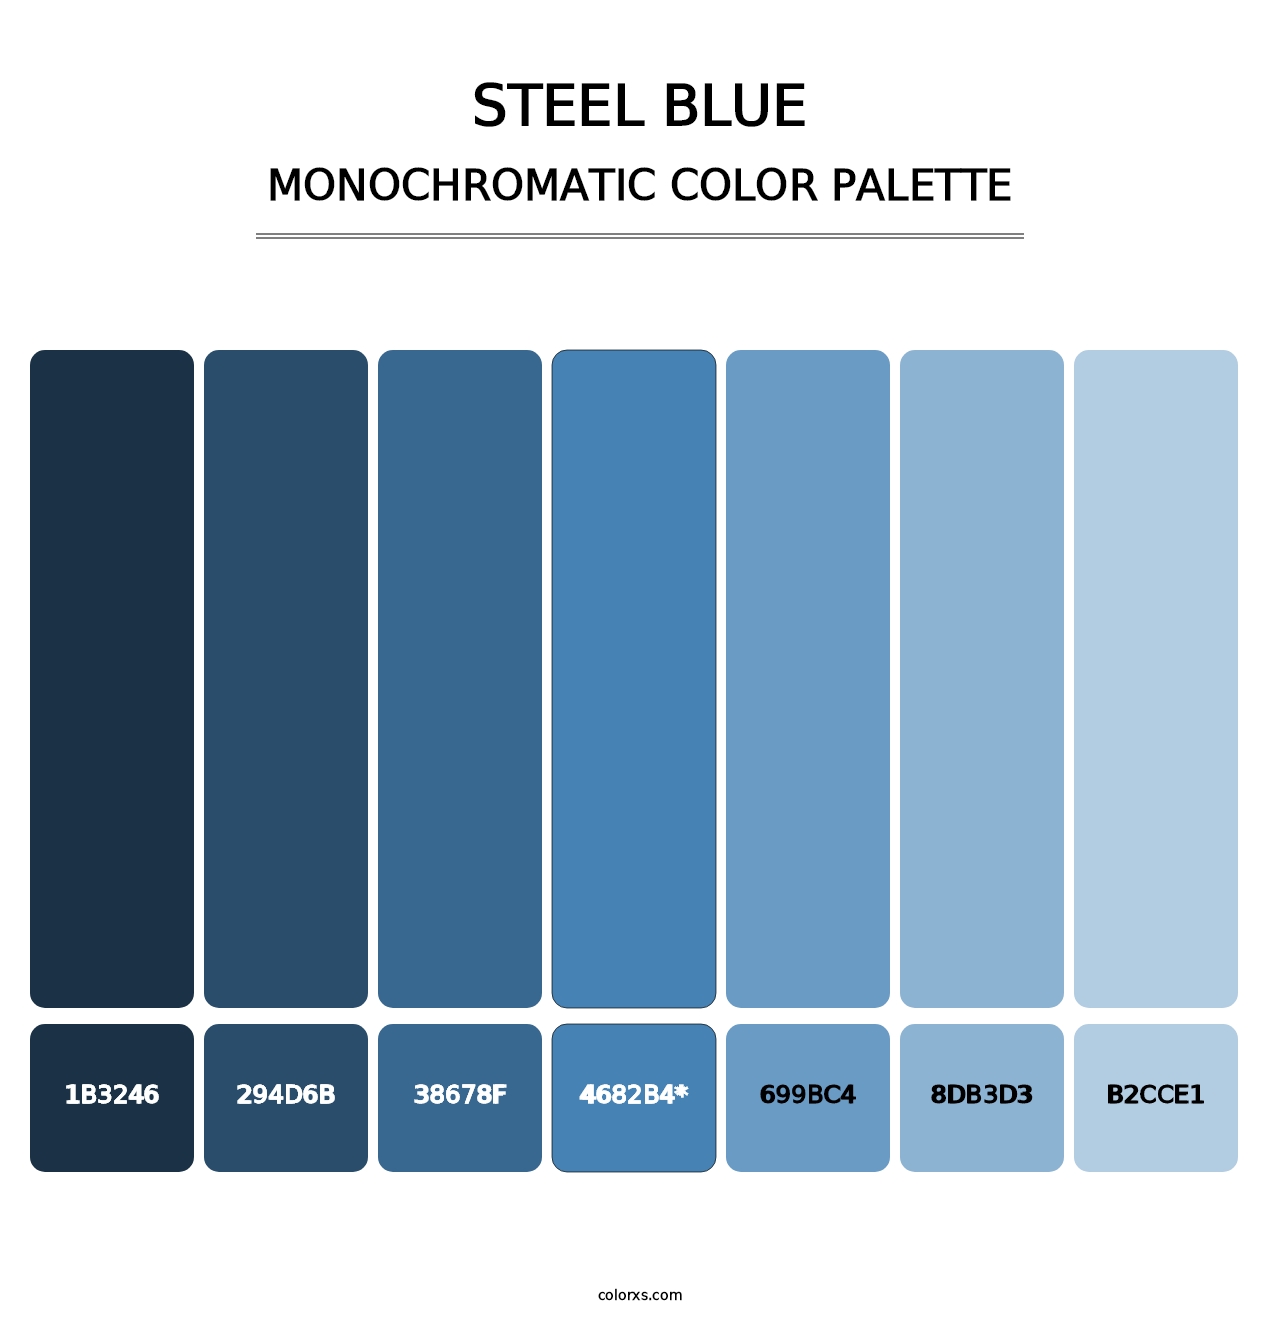 Steel Blue - Monochromatic Color Palette